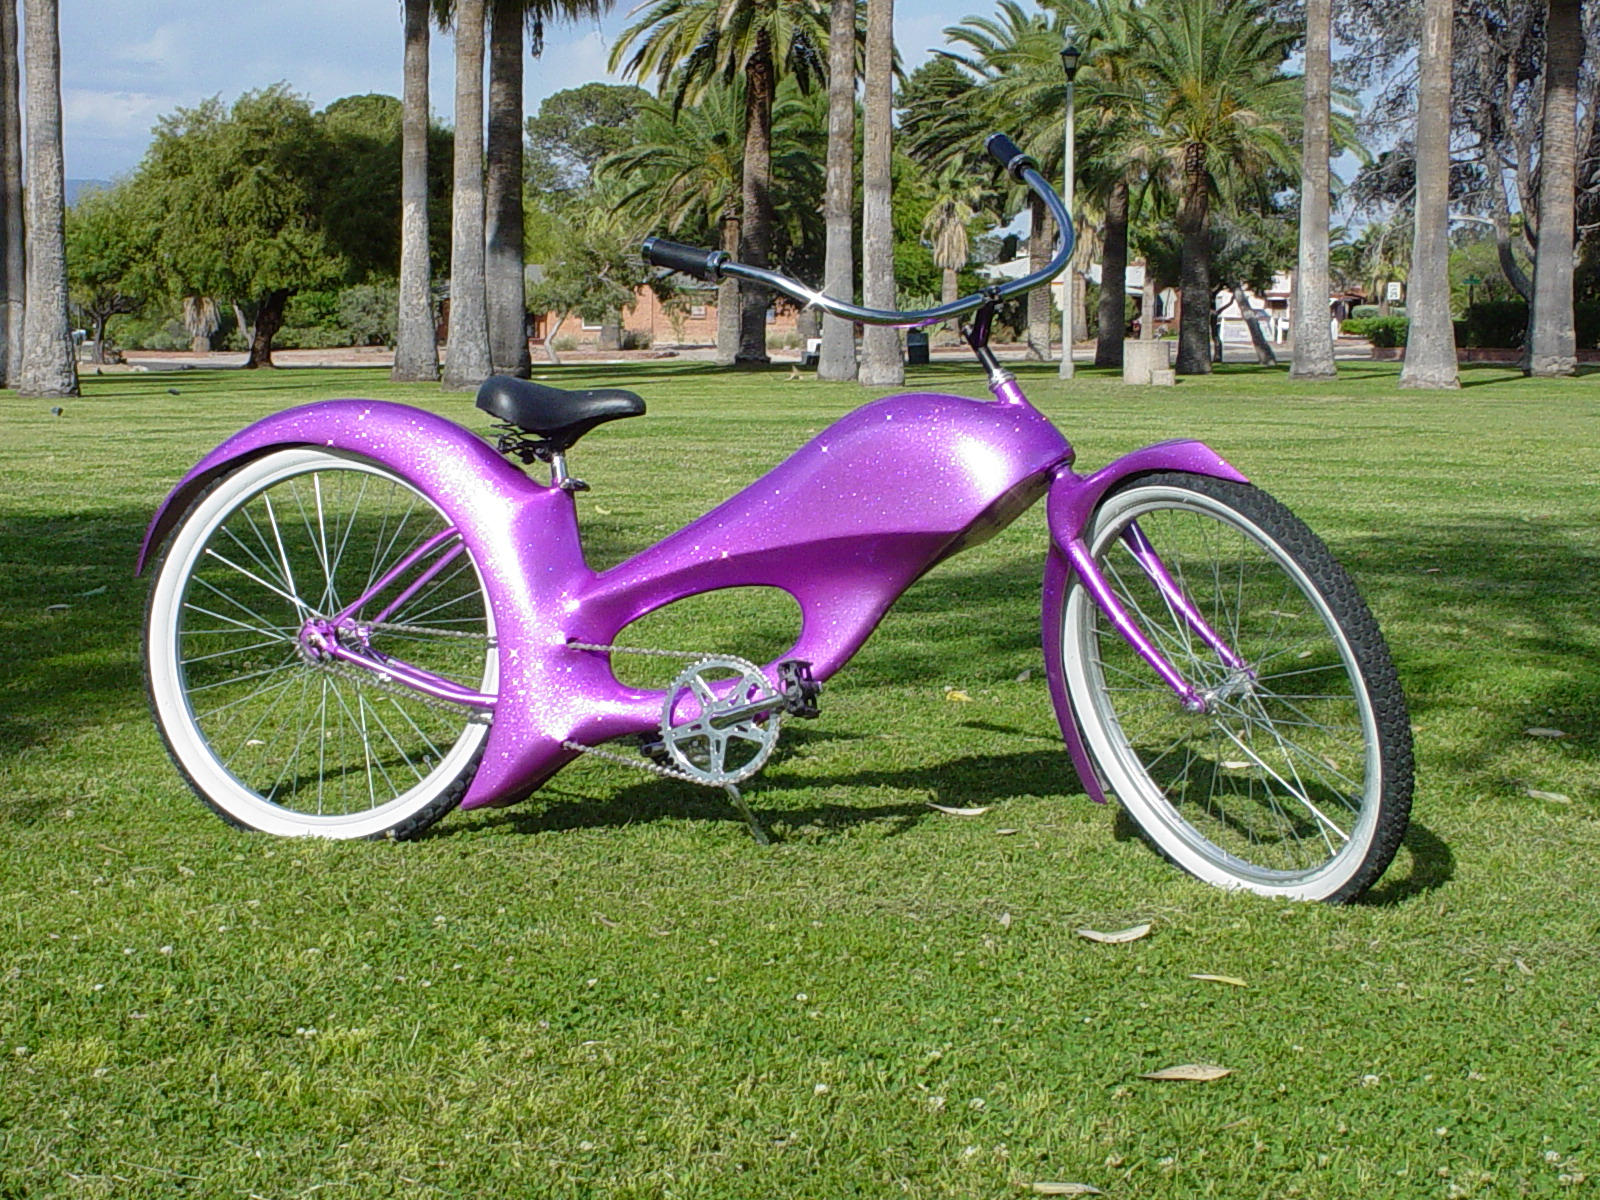 The Pink Bike 1 by caesar1996 on DeviantArt